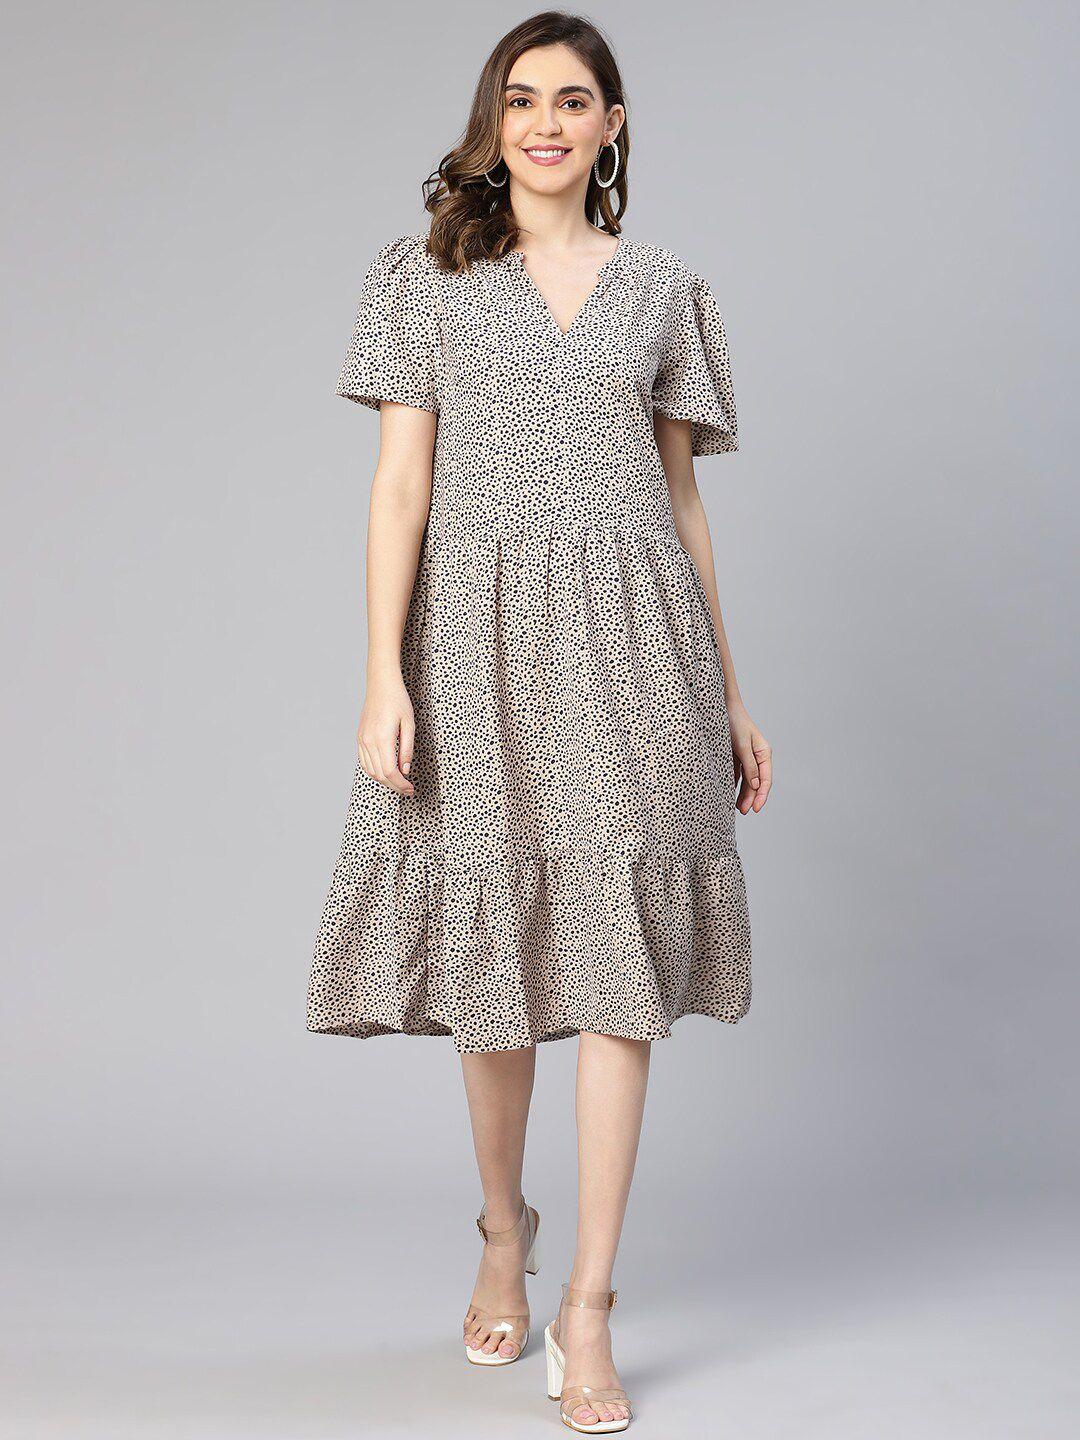 oxolloxo-abstract-dot-print-knee-length-a-line-midi-dress